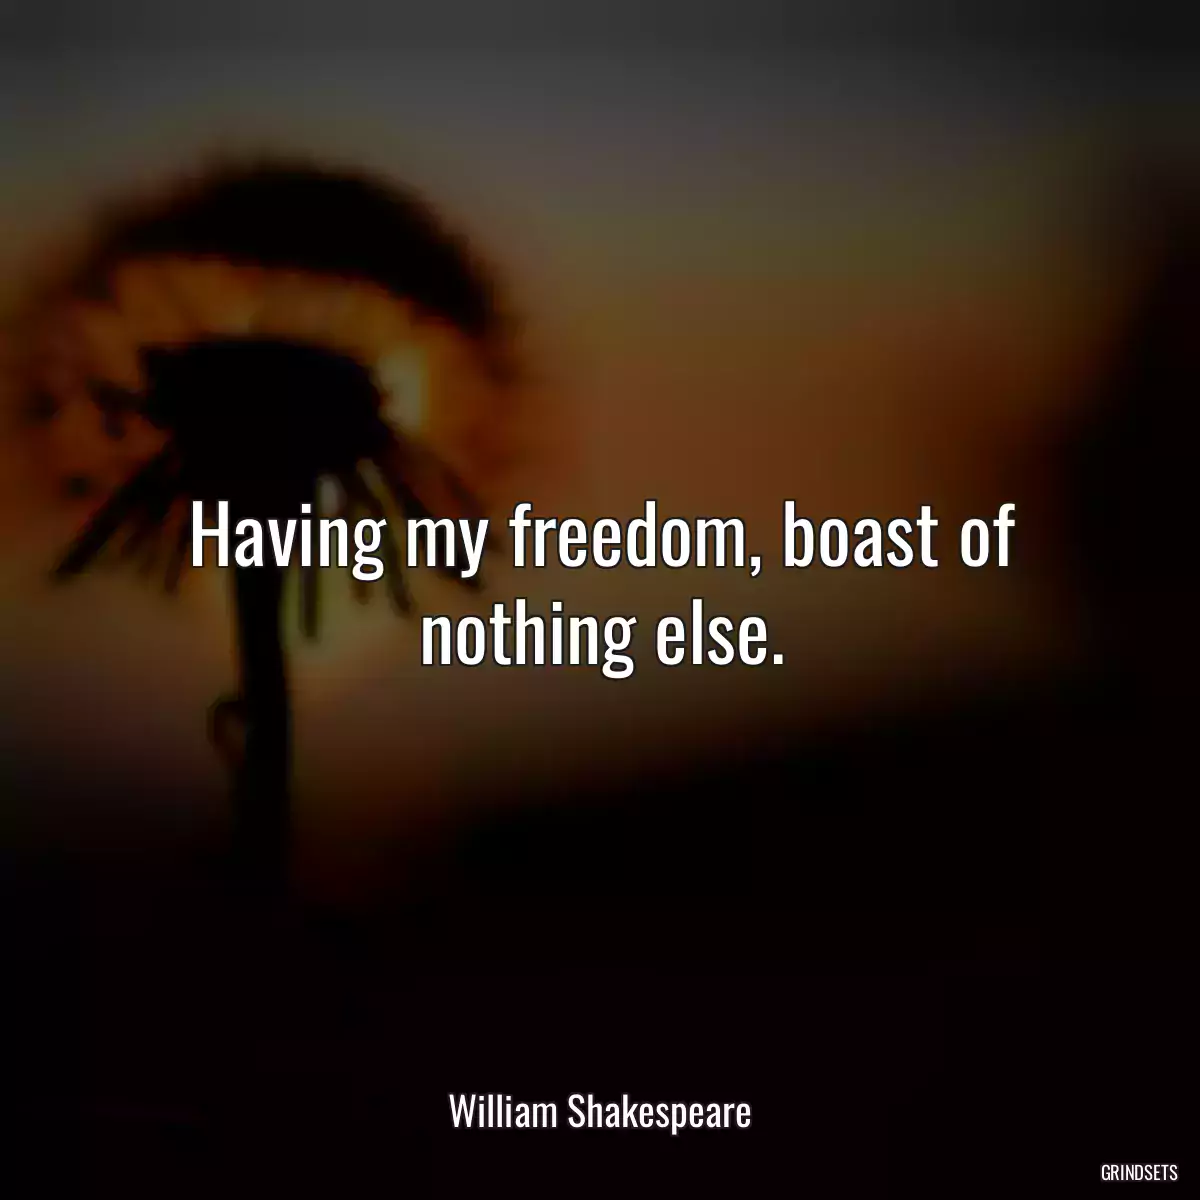 Having my freedom, boast of nothing else.